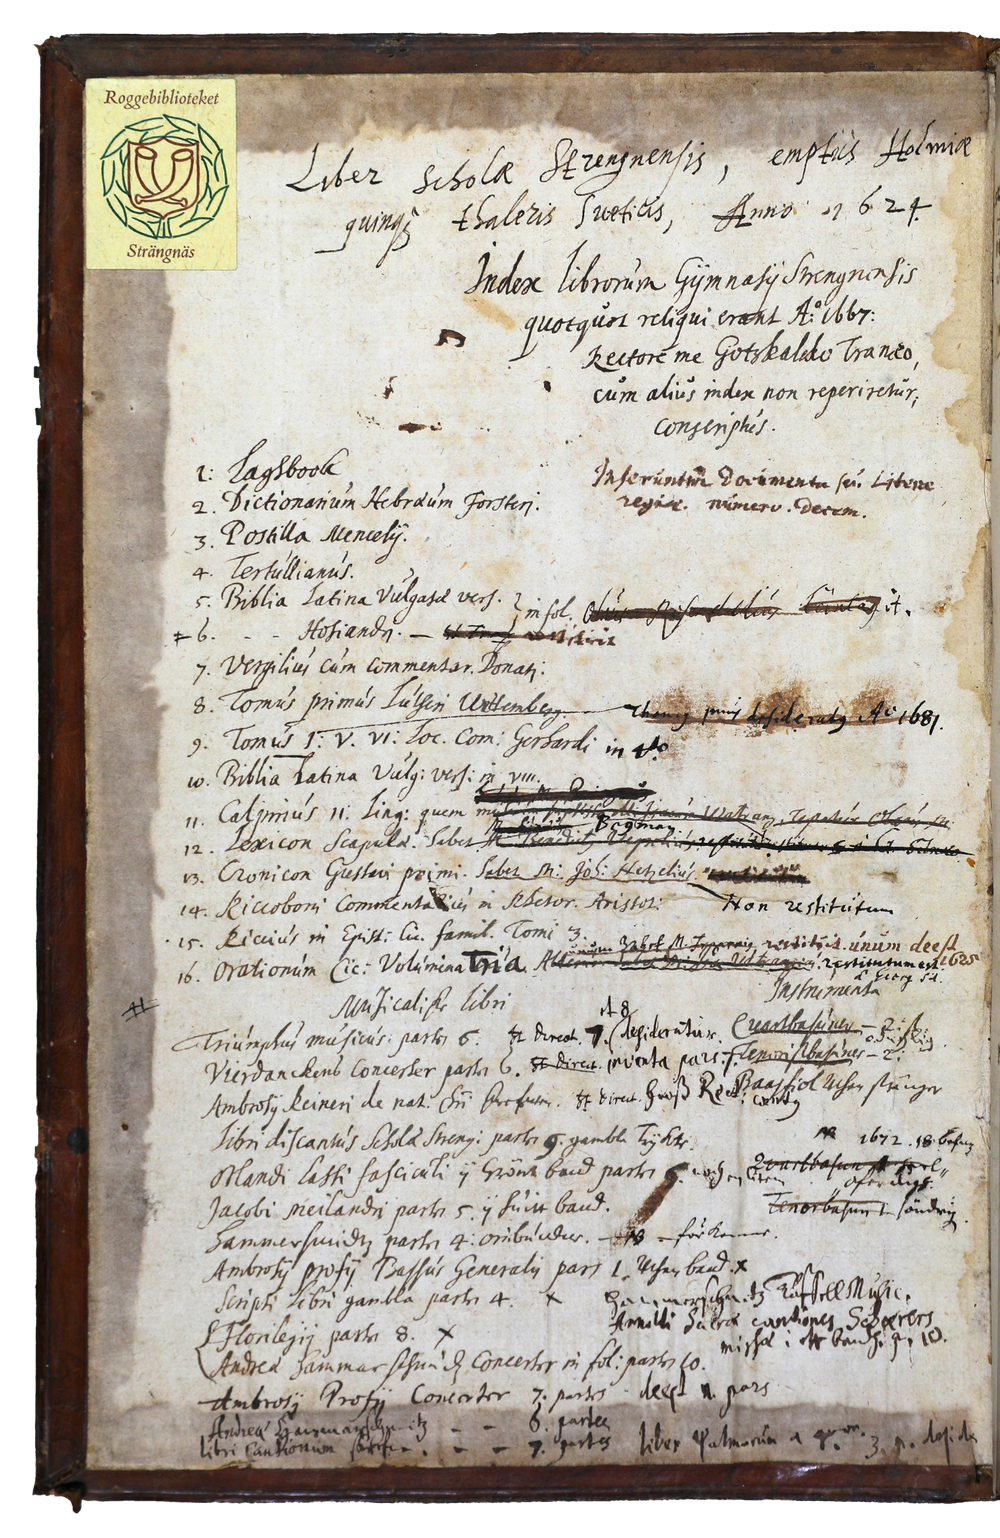 Förteckning över Strängnäs gymnasiums böcker 1667 på insidan av en bokpärm.